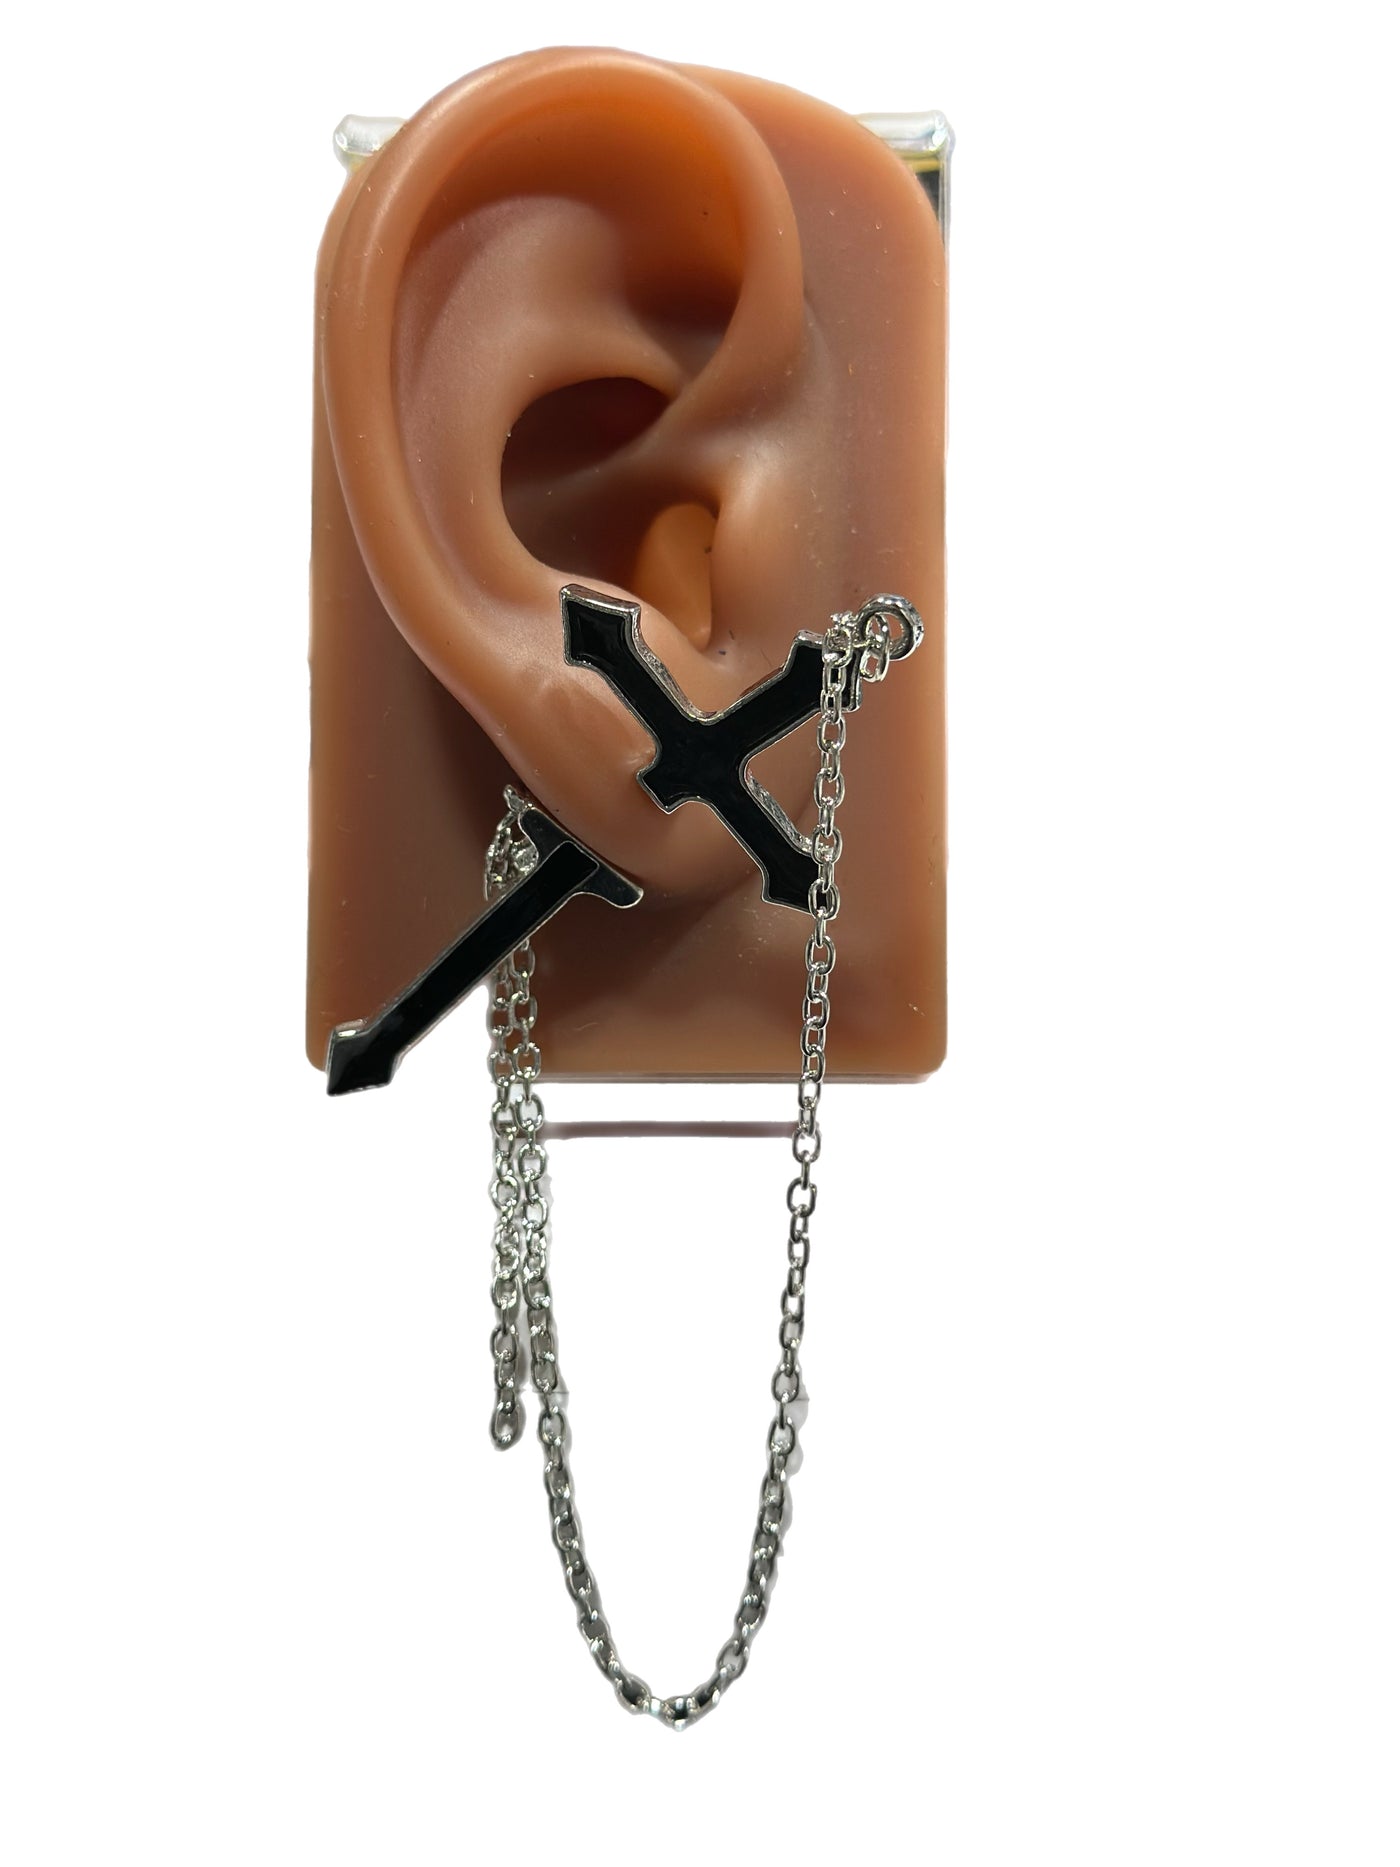 Donna Sword / Dagger earring